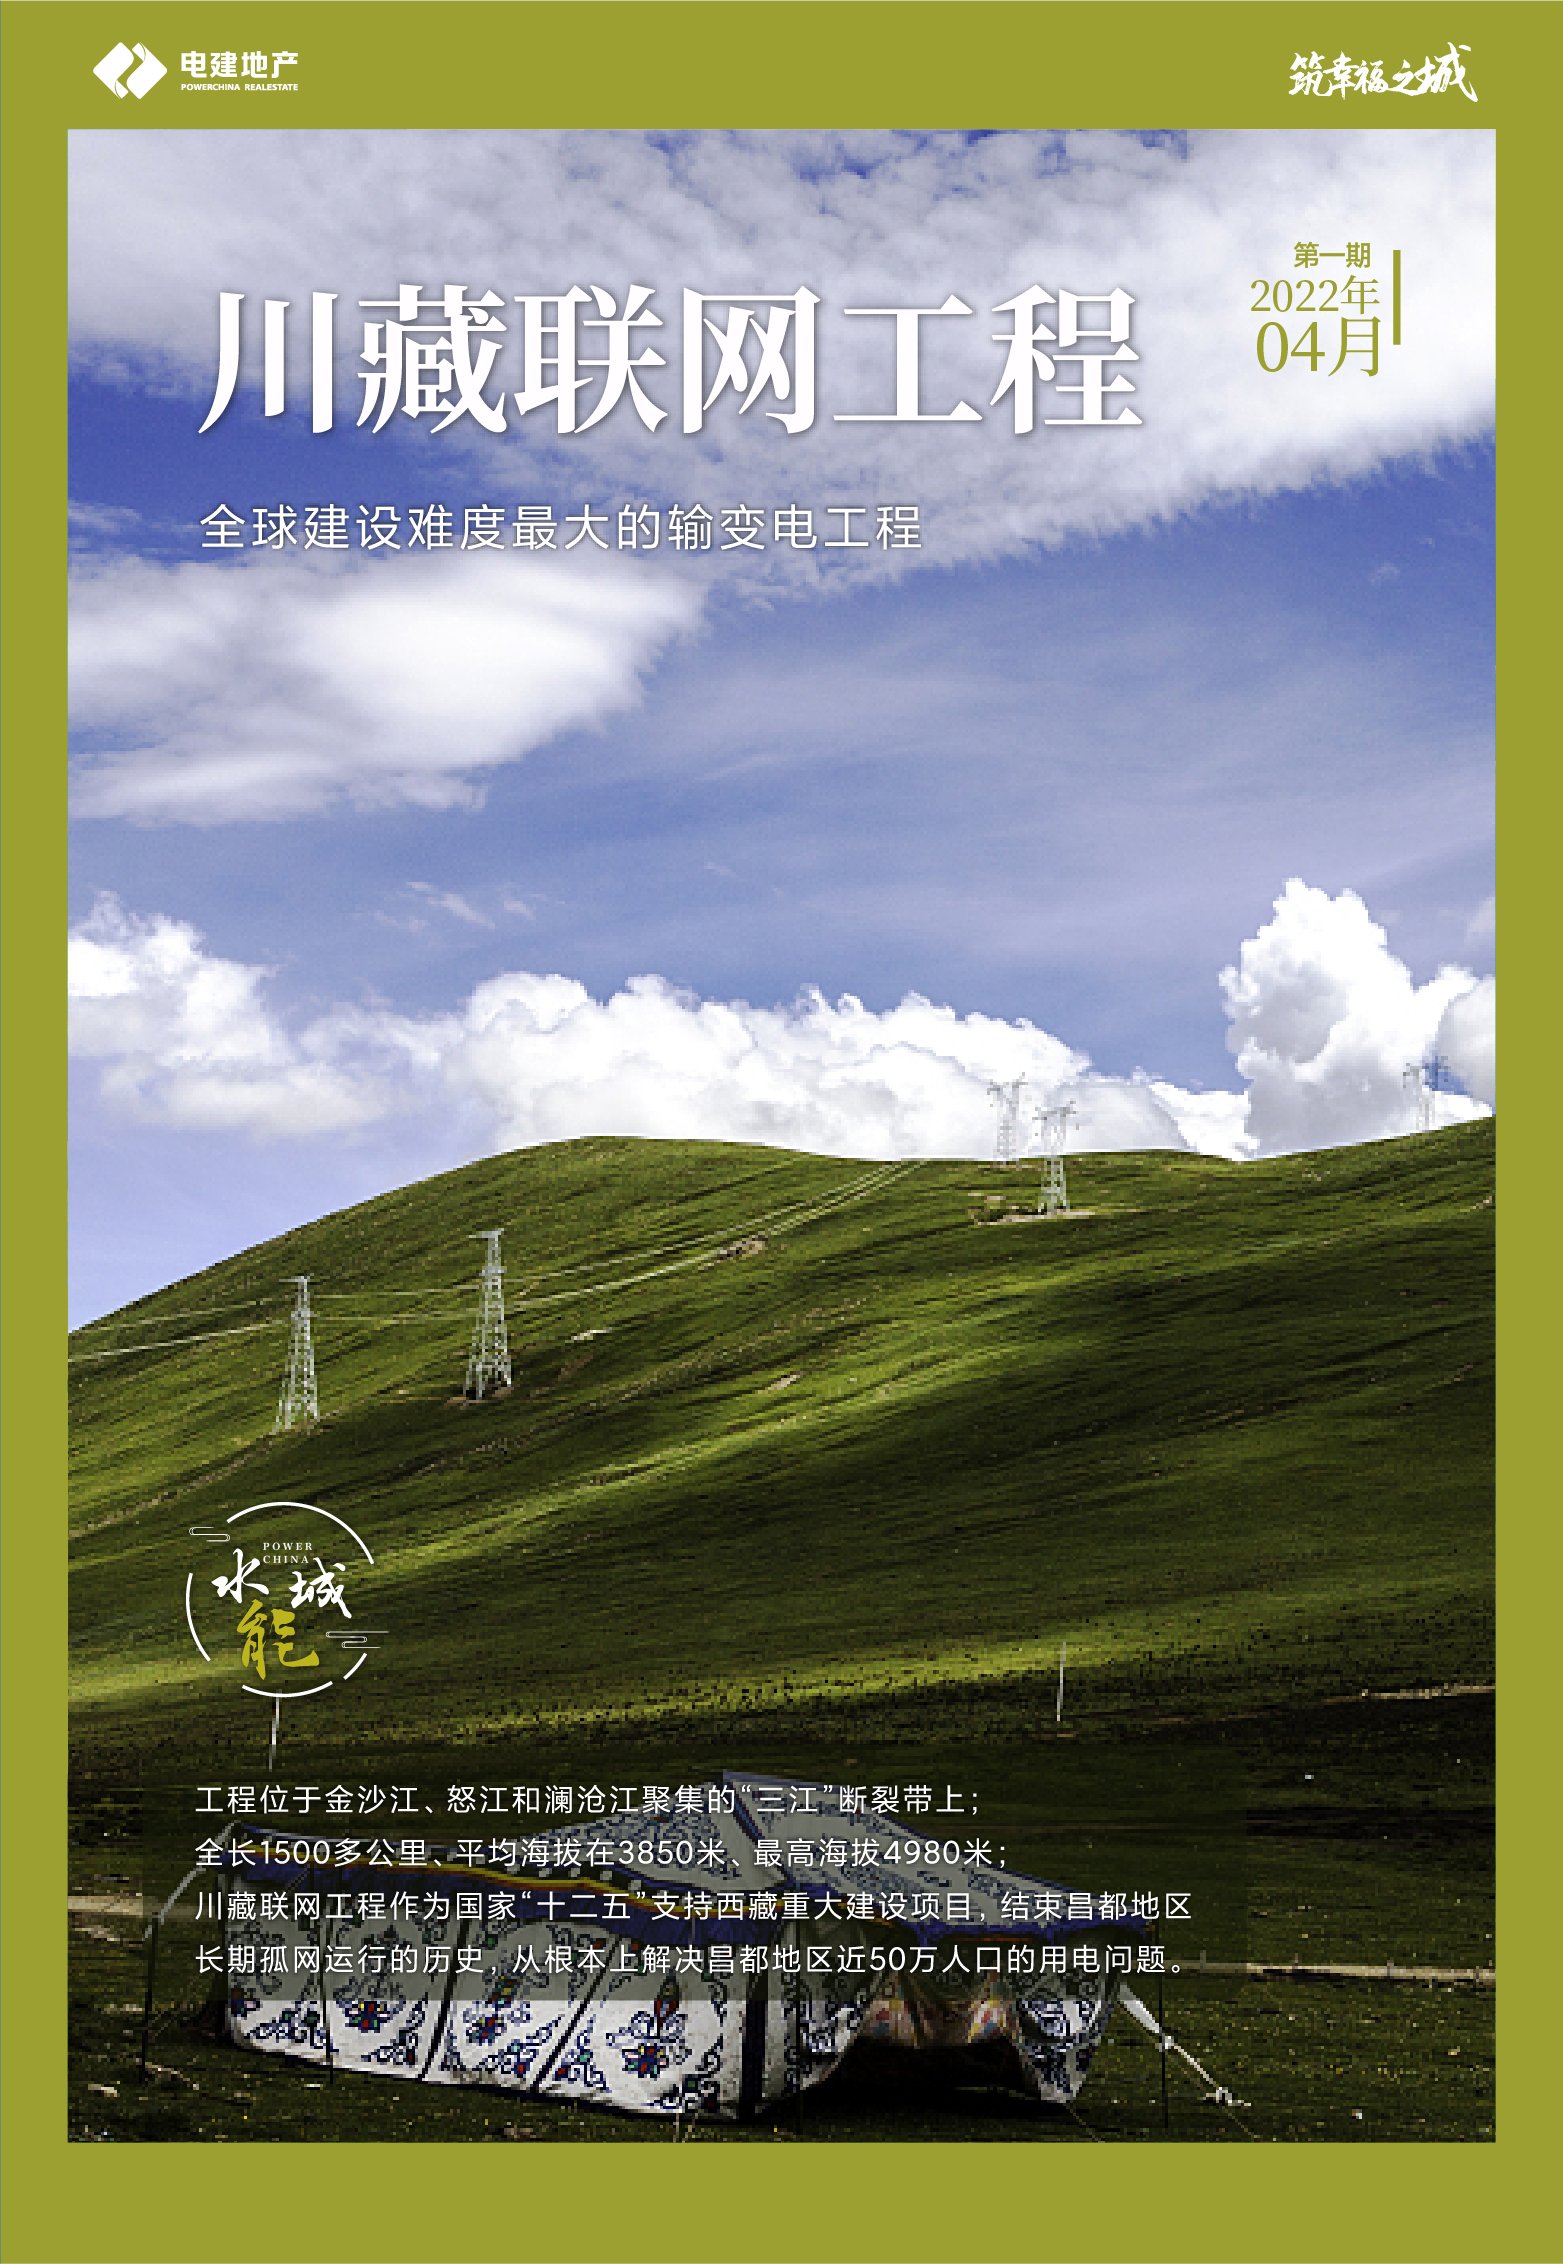 新样式 抢先看 一文全解“水能城品牌封面”旬海报_中国网地产